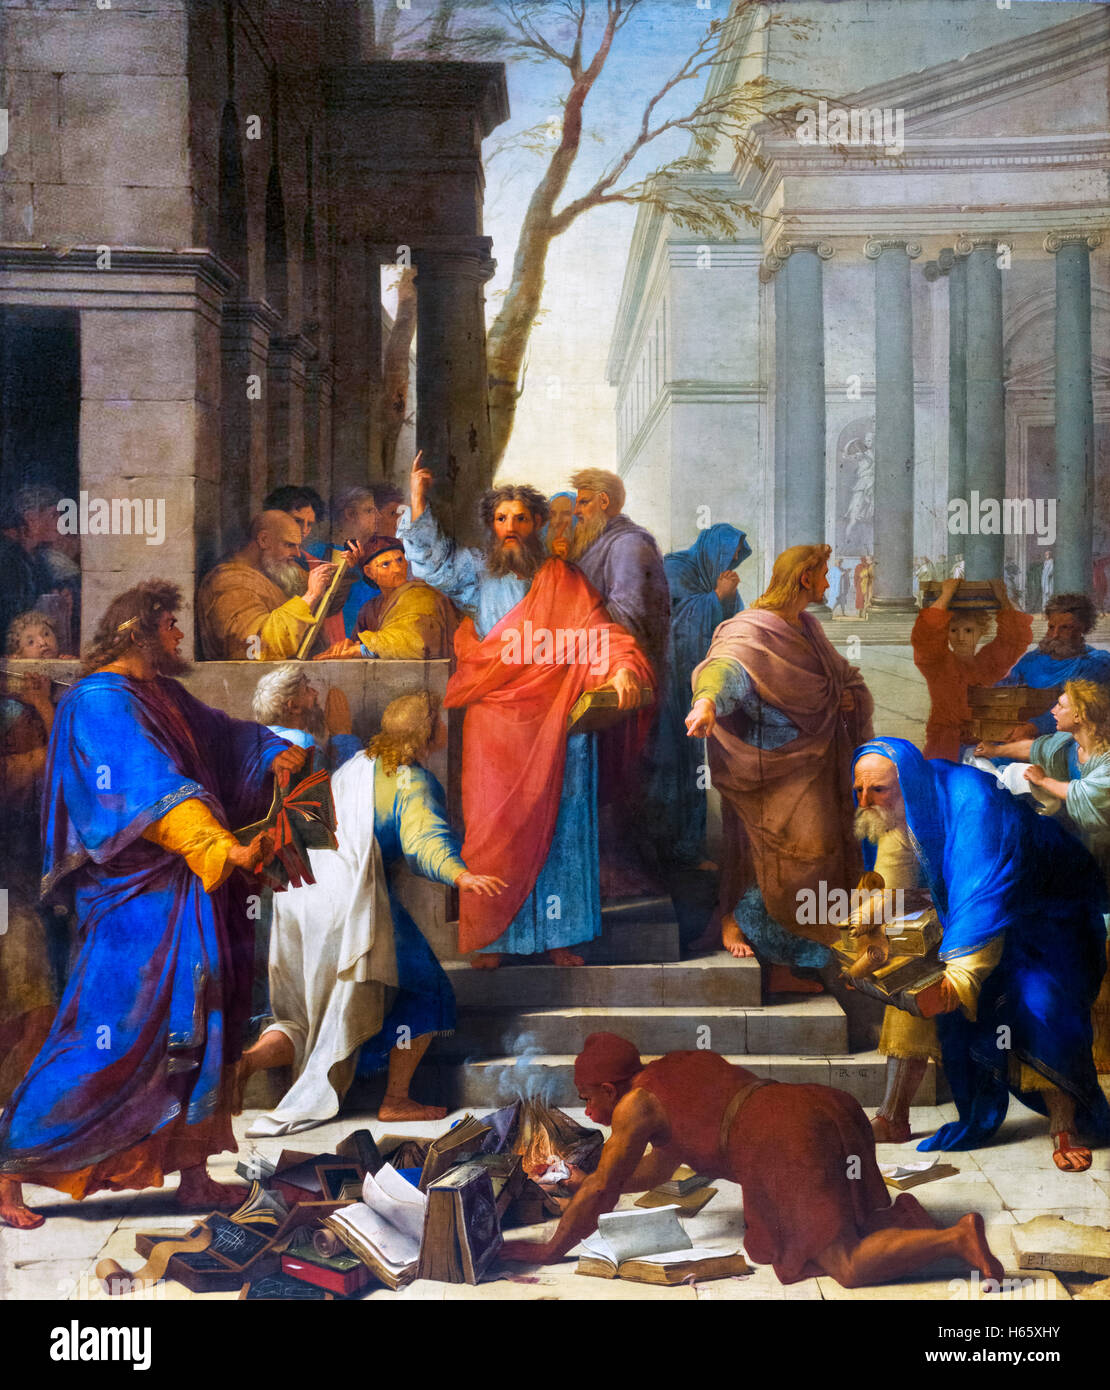 Le Sermon de saint Paul à Ephèse (la prédication de saint Paul à Éphèse) par Eustache Le Sueur, huile sur toile, 1649. St Paul est vu prêcher tout en livres sur la sorcellerie sont brûlées dans l'avant-plan. Banque D'Images